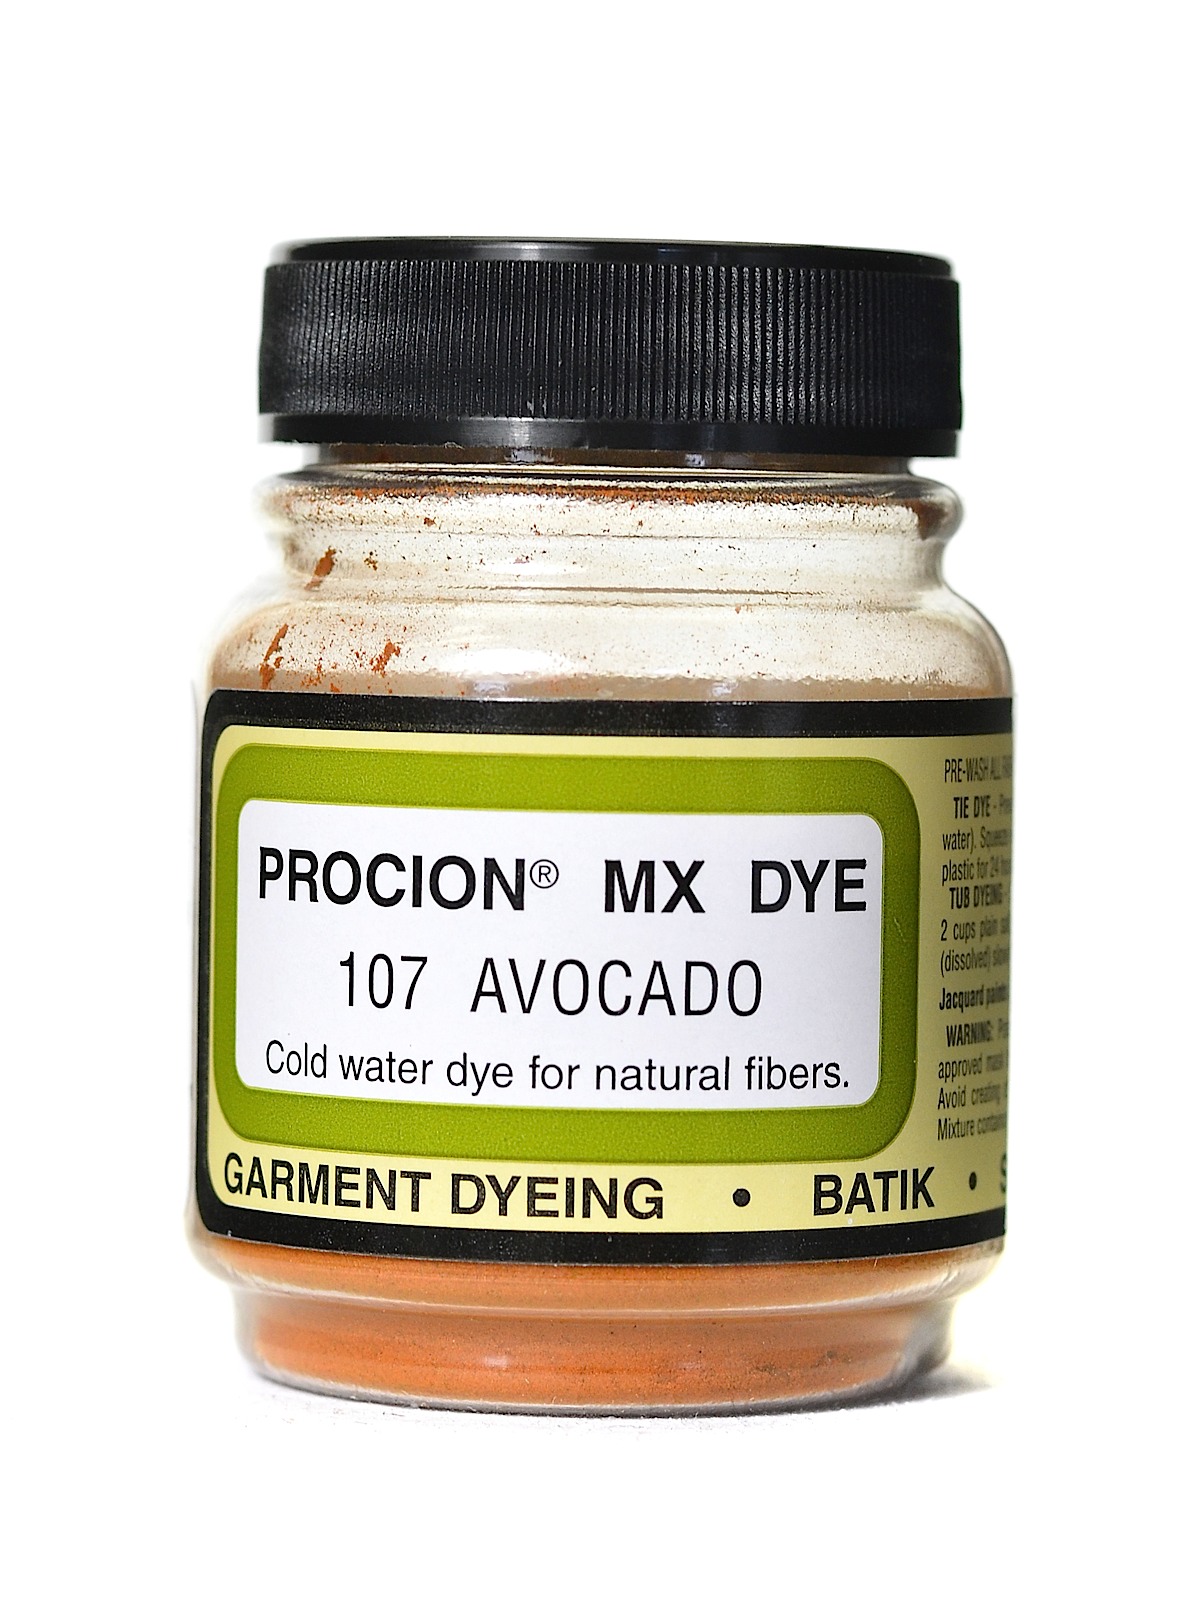 Jacquard Procion MX dye 2107 avocado